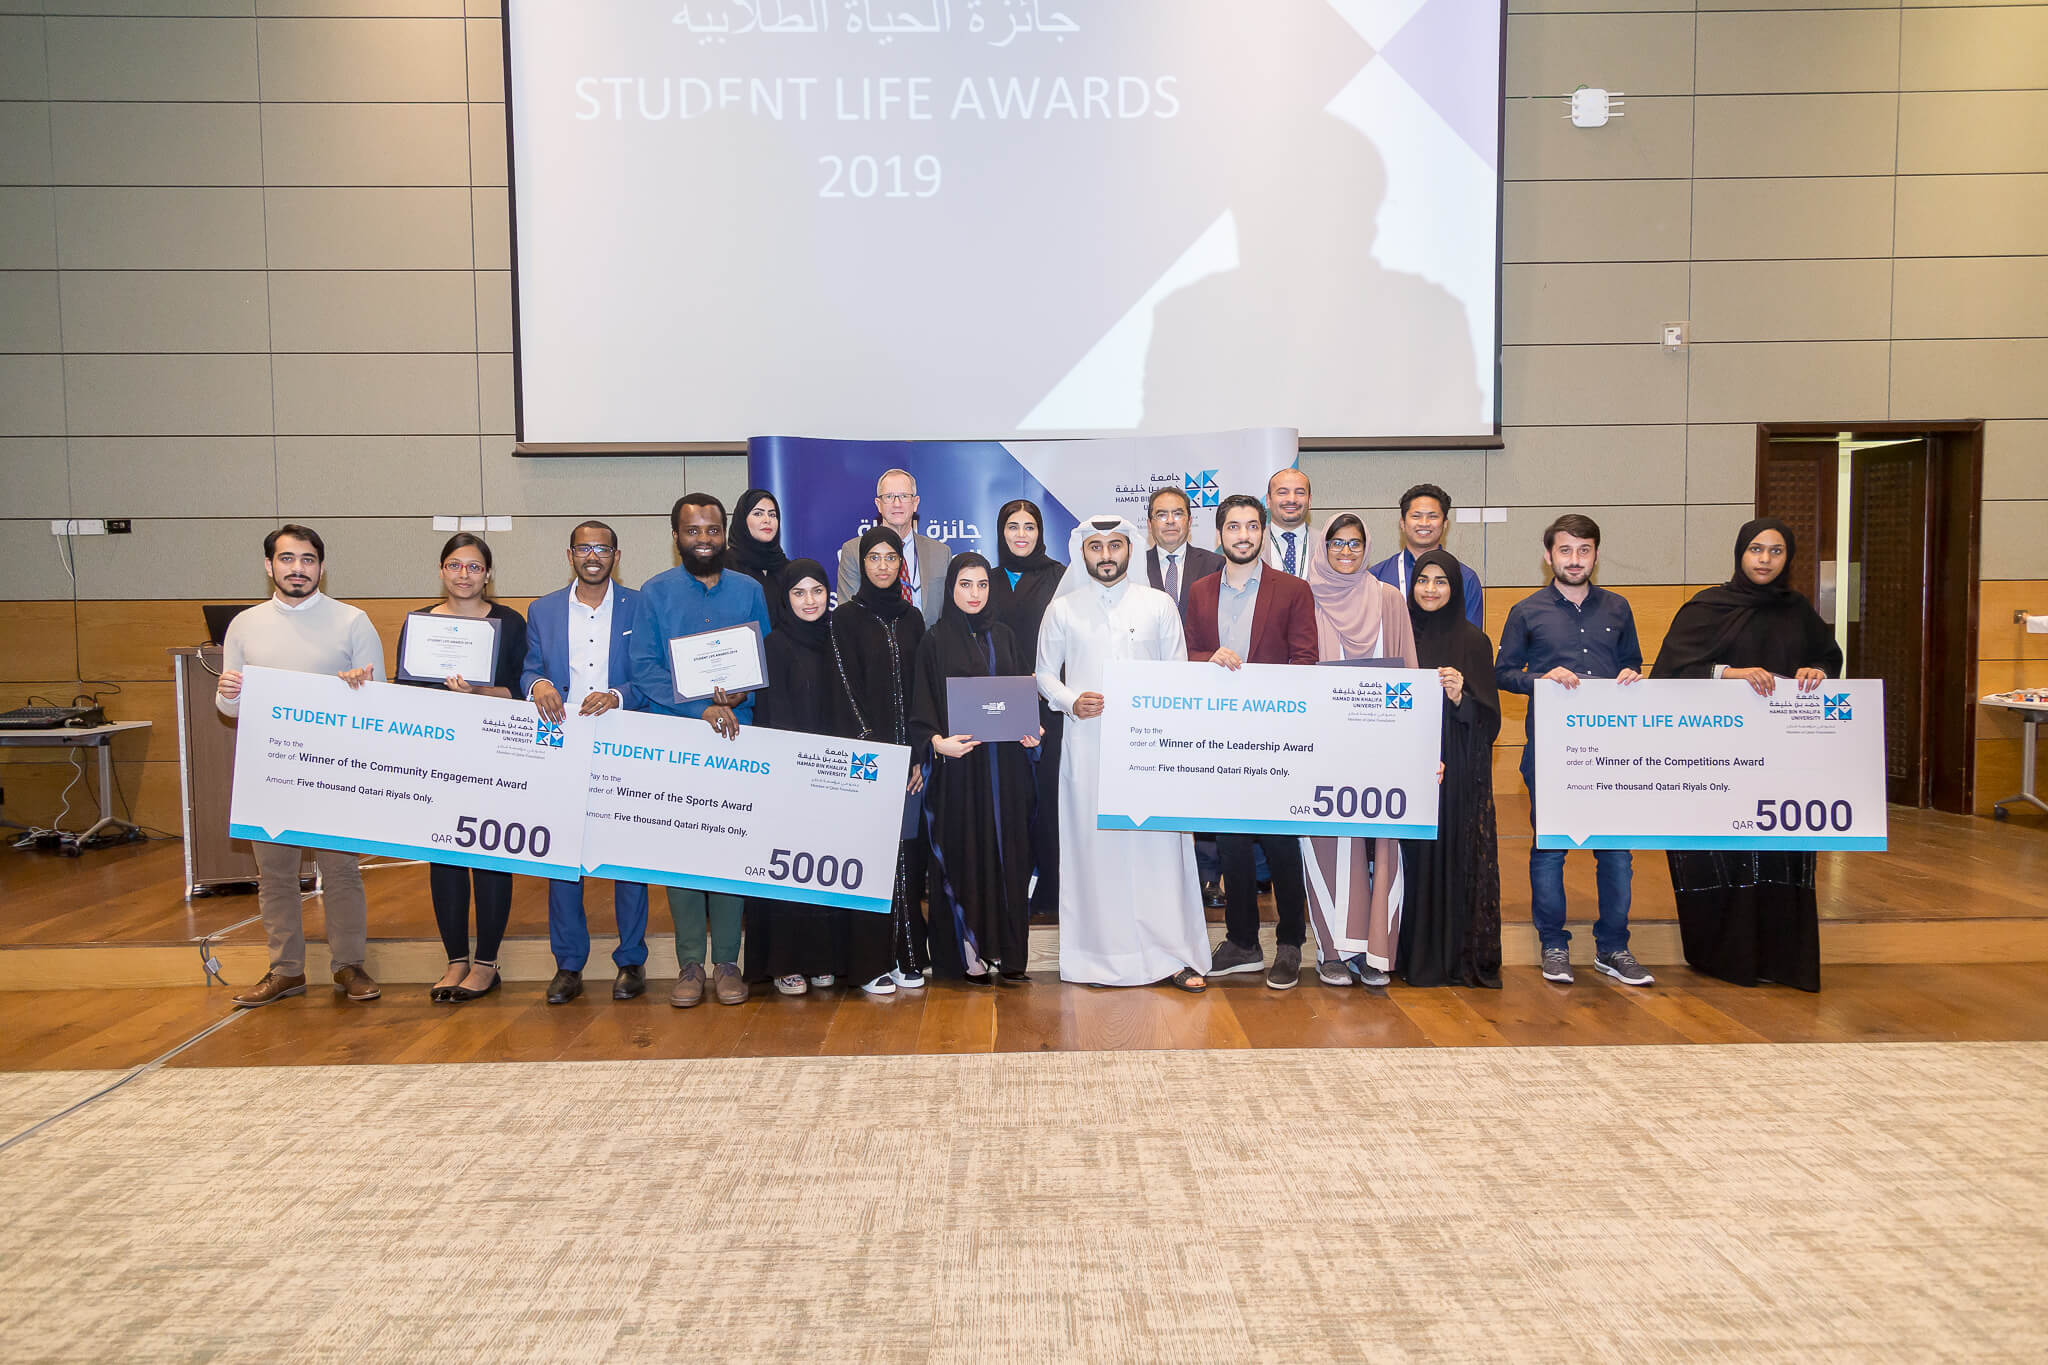 جامعة حمد بن خليفة تُكَرِم طلابها الفائزين بجوائز الحياة الطلابية 2019 